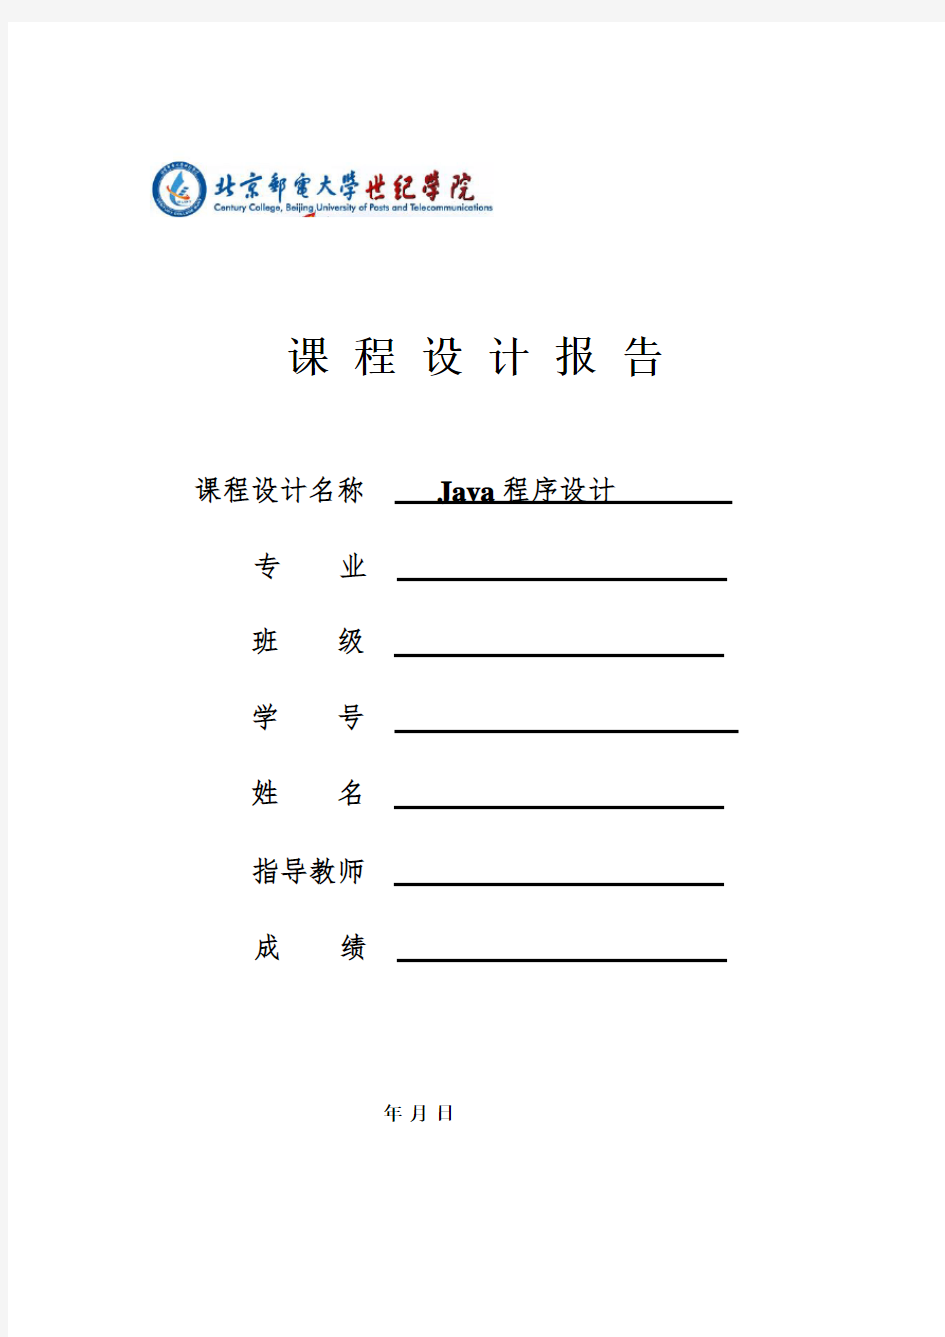 JAVA电子英汉词典课程设计